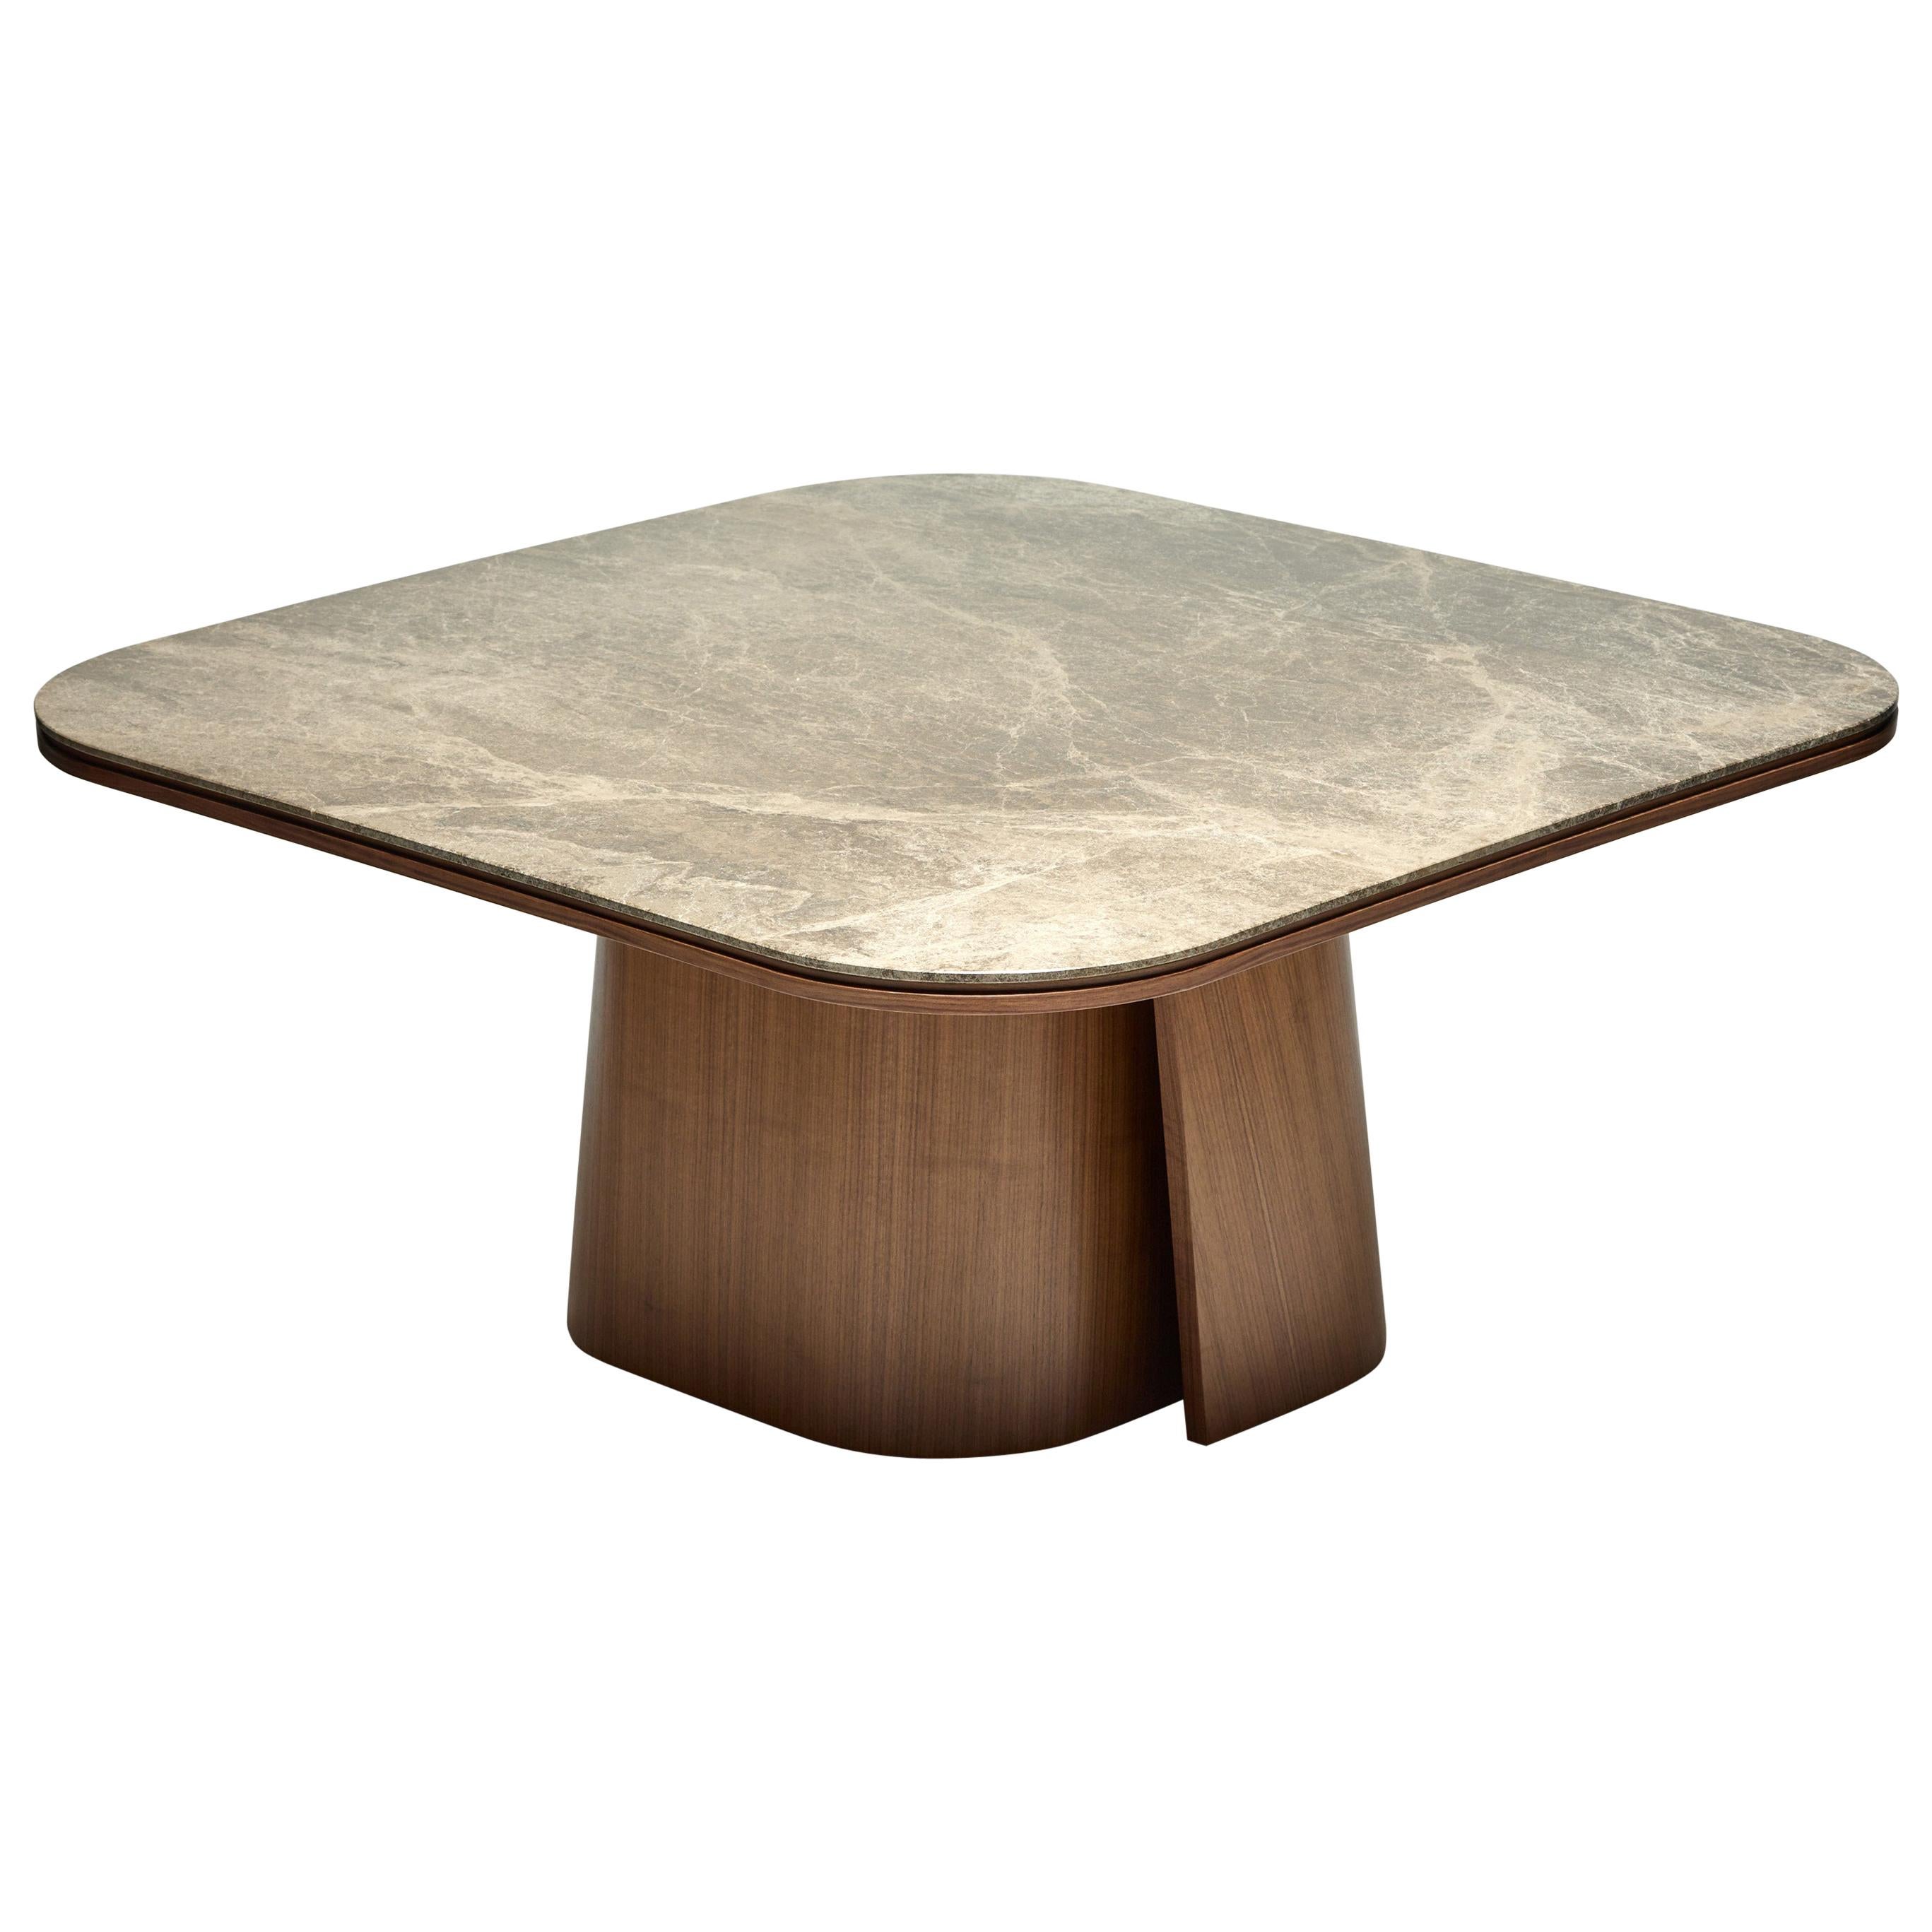 Dining Table, OOMA, by Reda Amalou Design, 2020, Emperador Marble, 140 cm